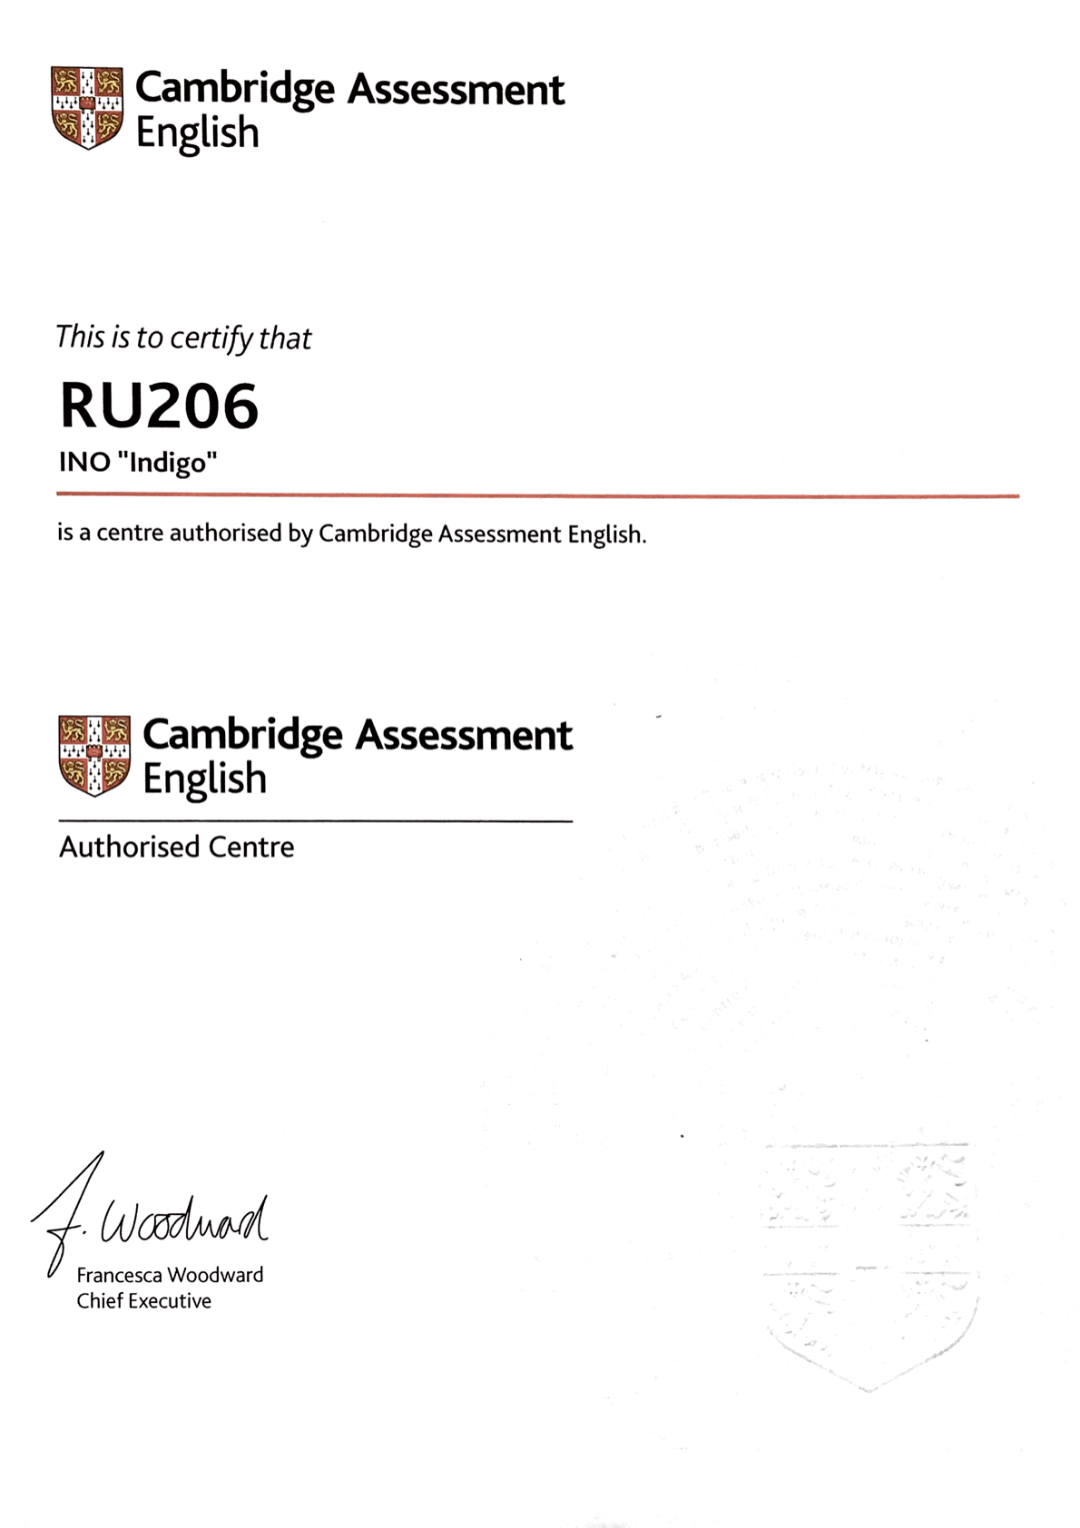 RU 206 | Кембридж центр